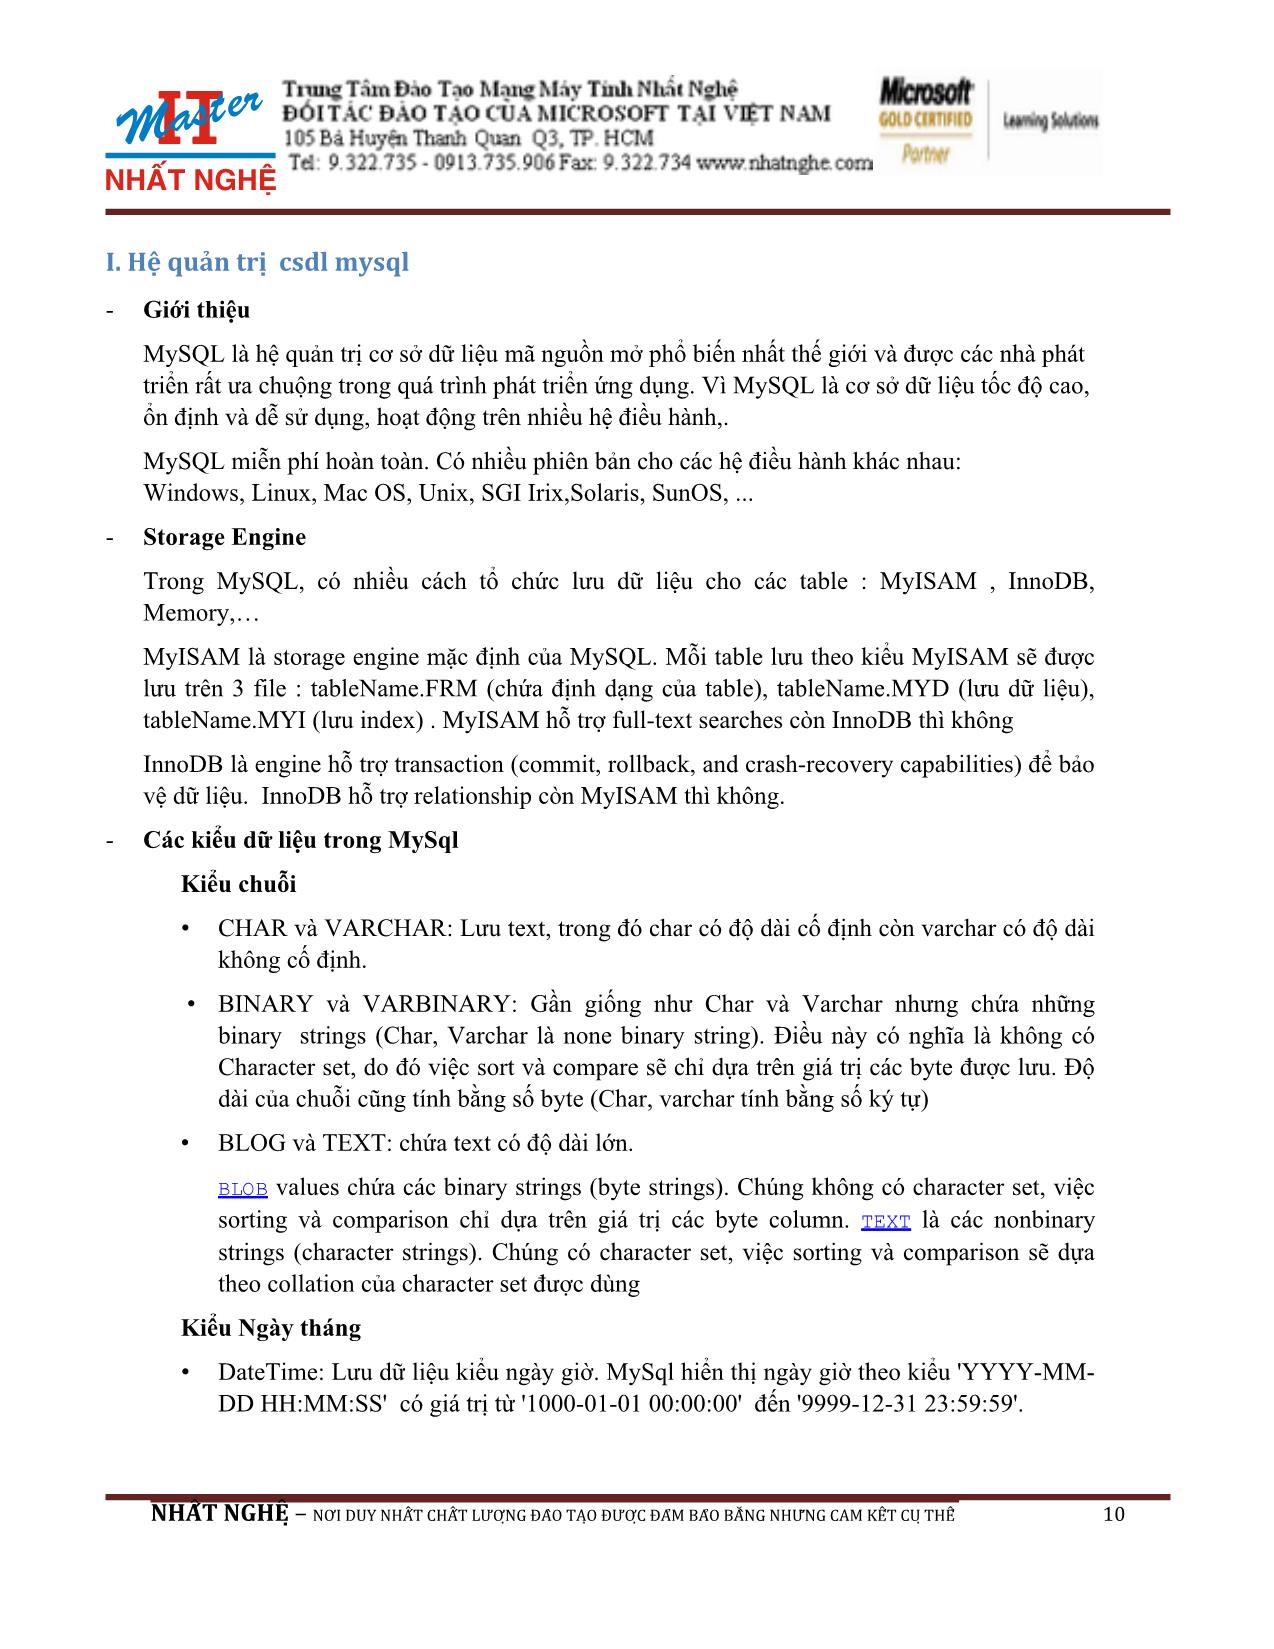 Giáo trình Hướng dẫn thiết kế Web PHP và MySQL (Phần 1) trang 10